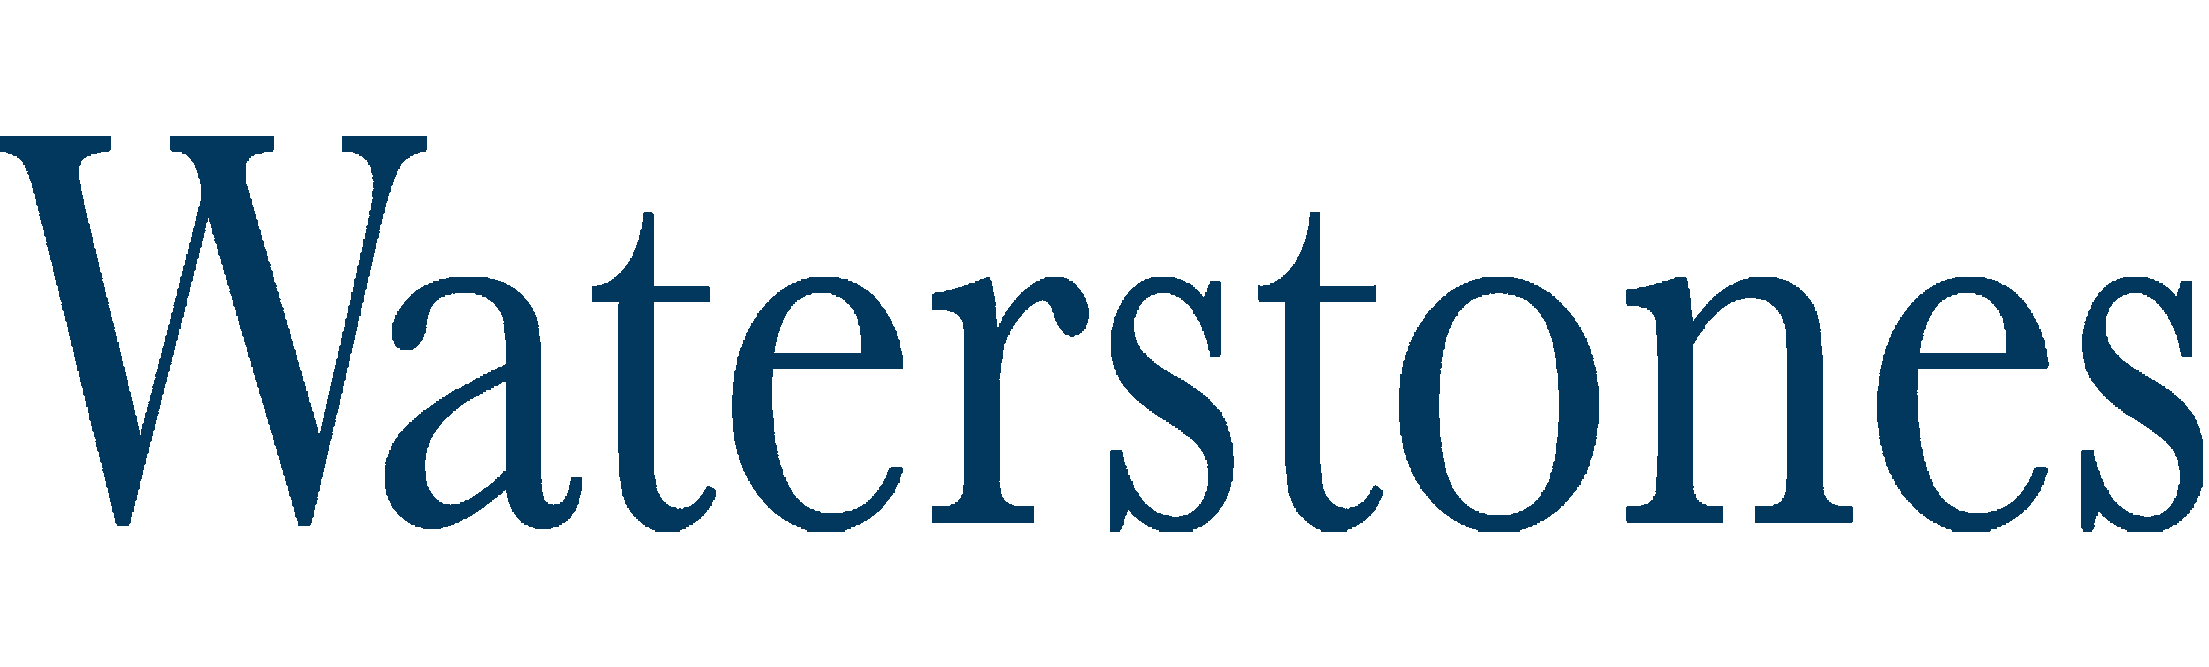 waterstones_logo-freelogovectors.net_.png